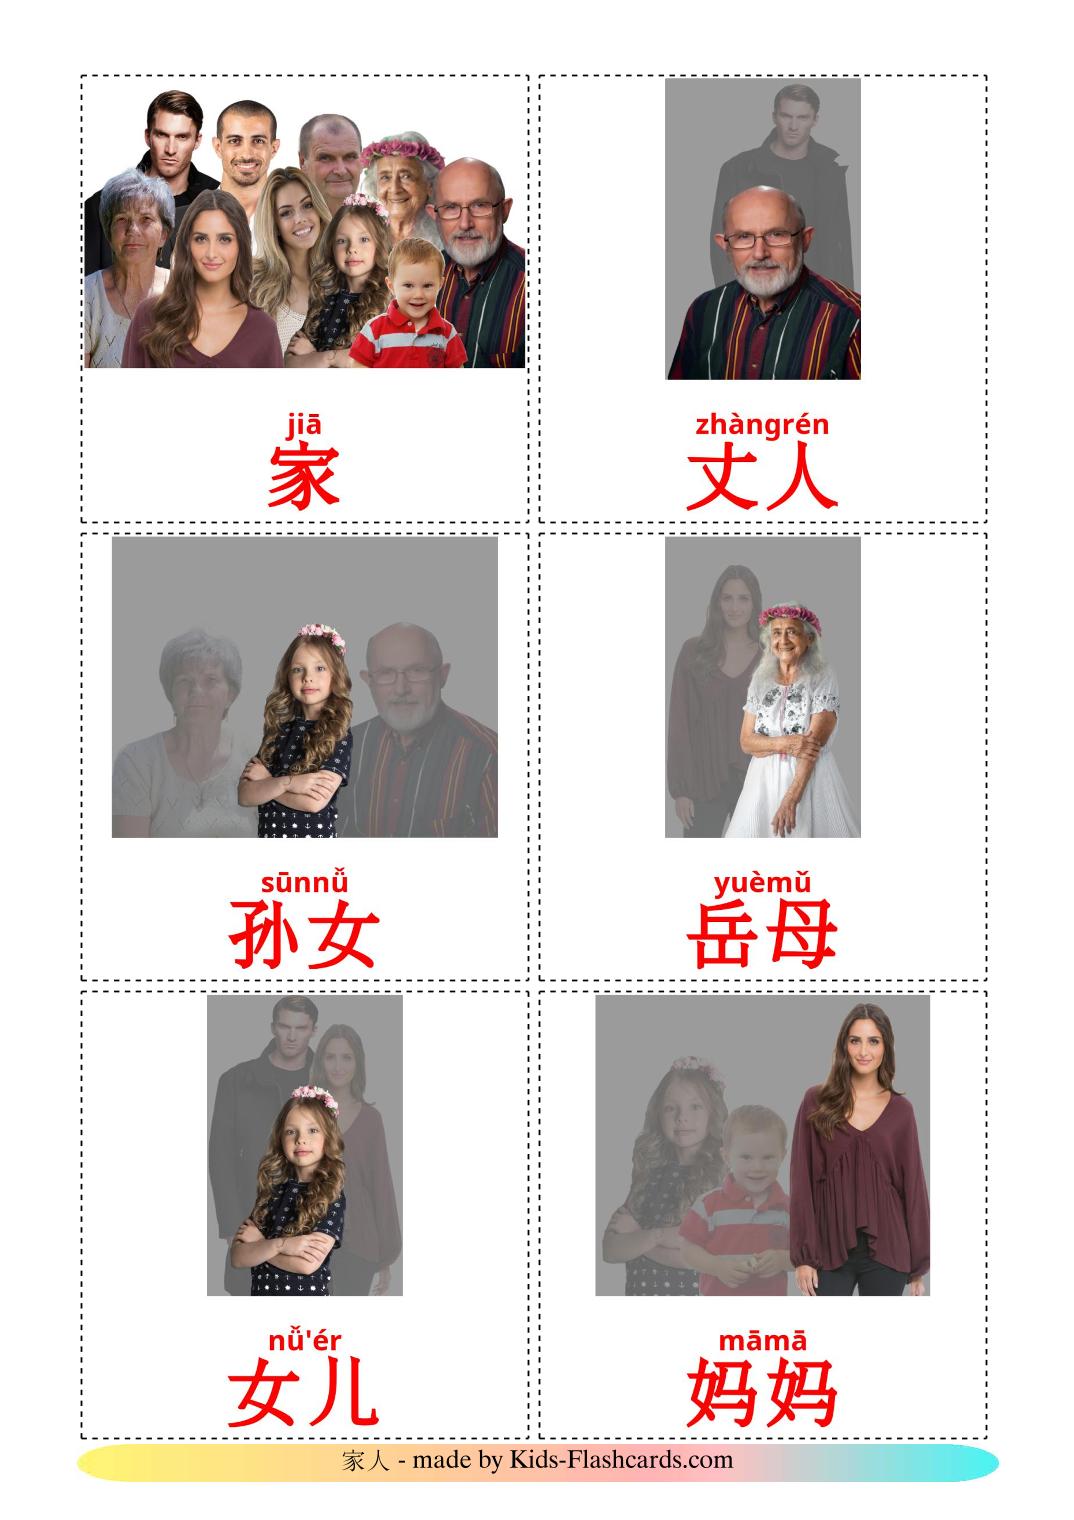 Membros da família - 32 Flashcards chinês(simplificado)es gratuitos para impressão